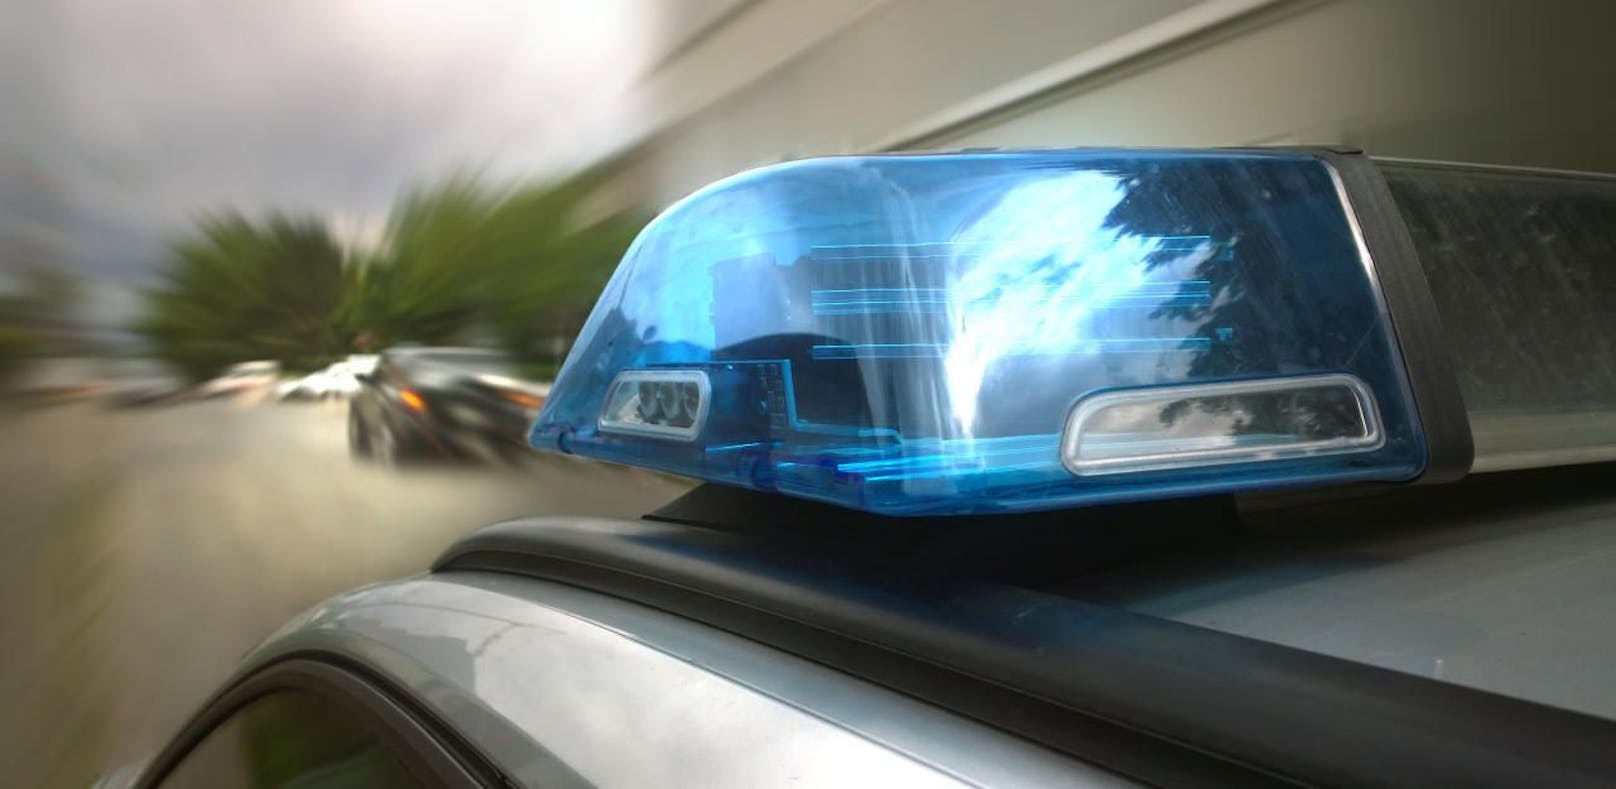 (Symbolfoto): Alko-Fahrt, Sachbeschädigung, Flucht vor der Polizei: Ein 34-jähriger Autofahrer und sein 29-jähriger Beifahrer sorgten in der Nacht auf Freitag in Wien-Simmering für Unruhe.